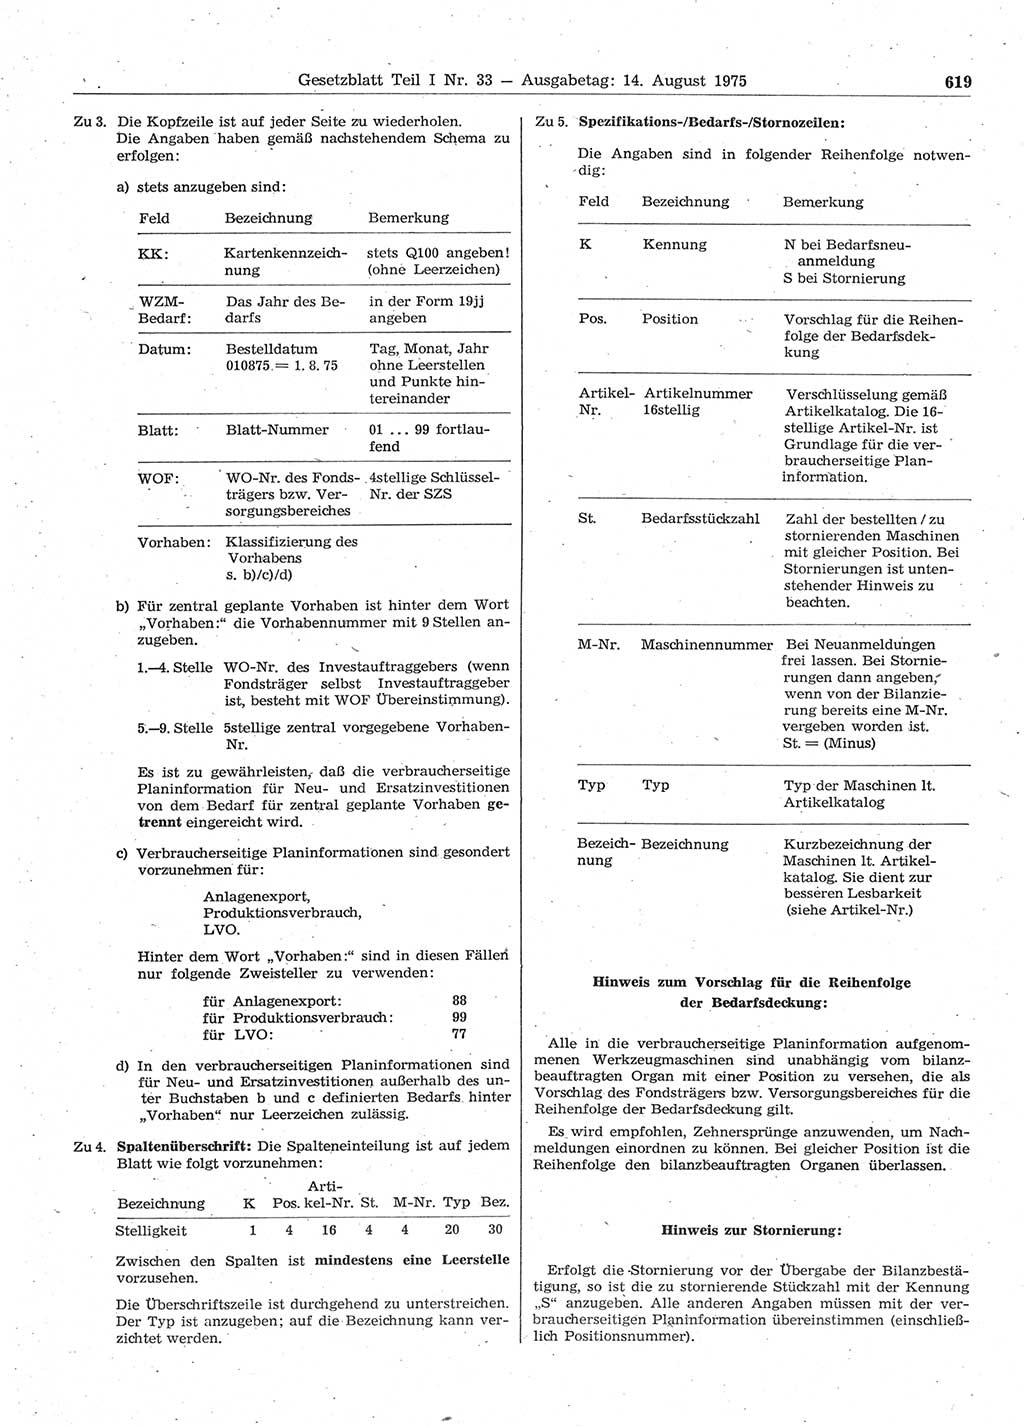 Gesetzblatt (GBl.) der Deutschen Demokratischen Republik (DDR) Teil Ⅰ 1975, Seite 619 (GBl. DDR Ⅰ 1975, S. 619)